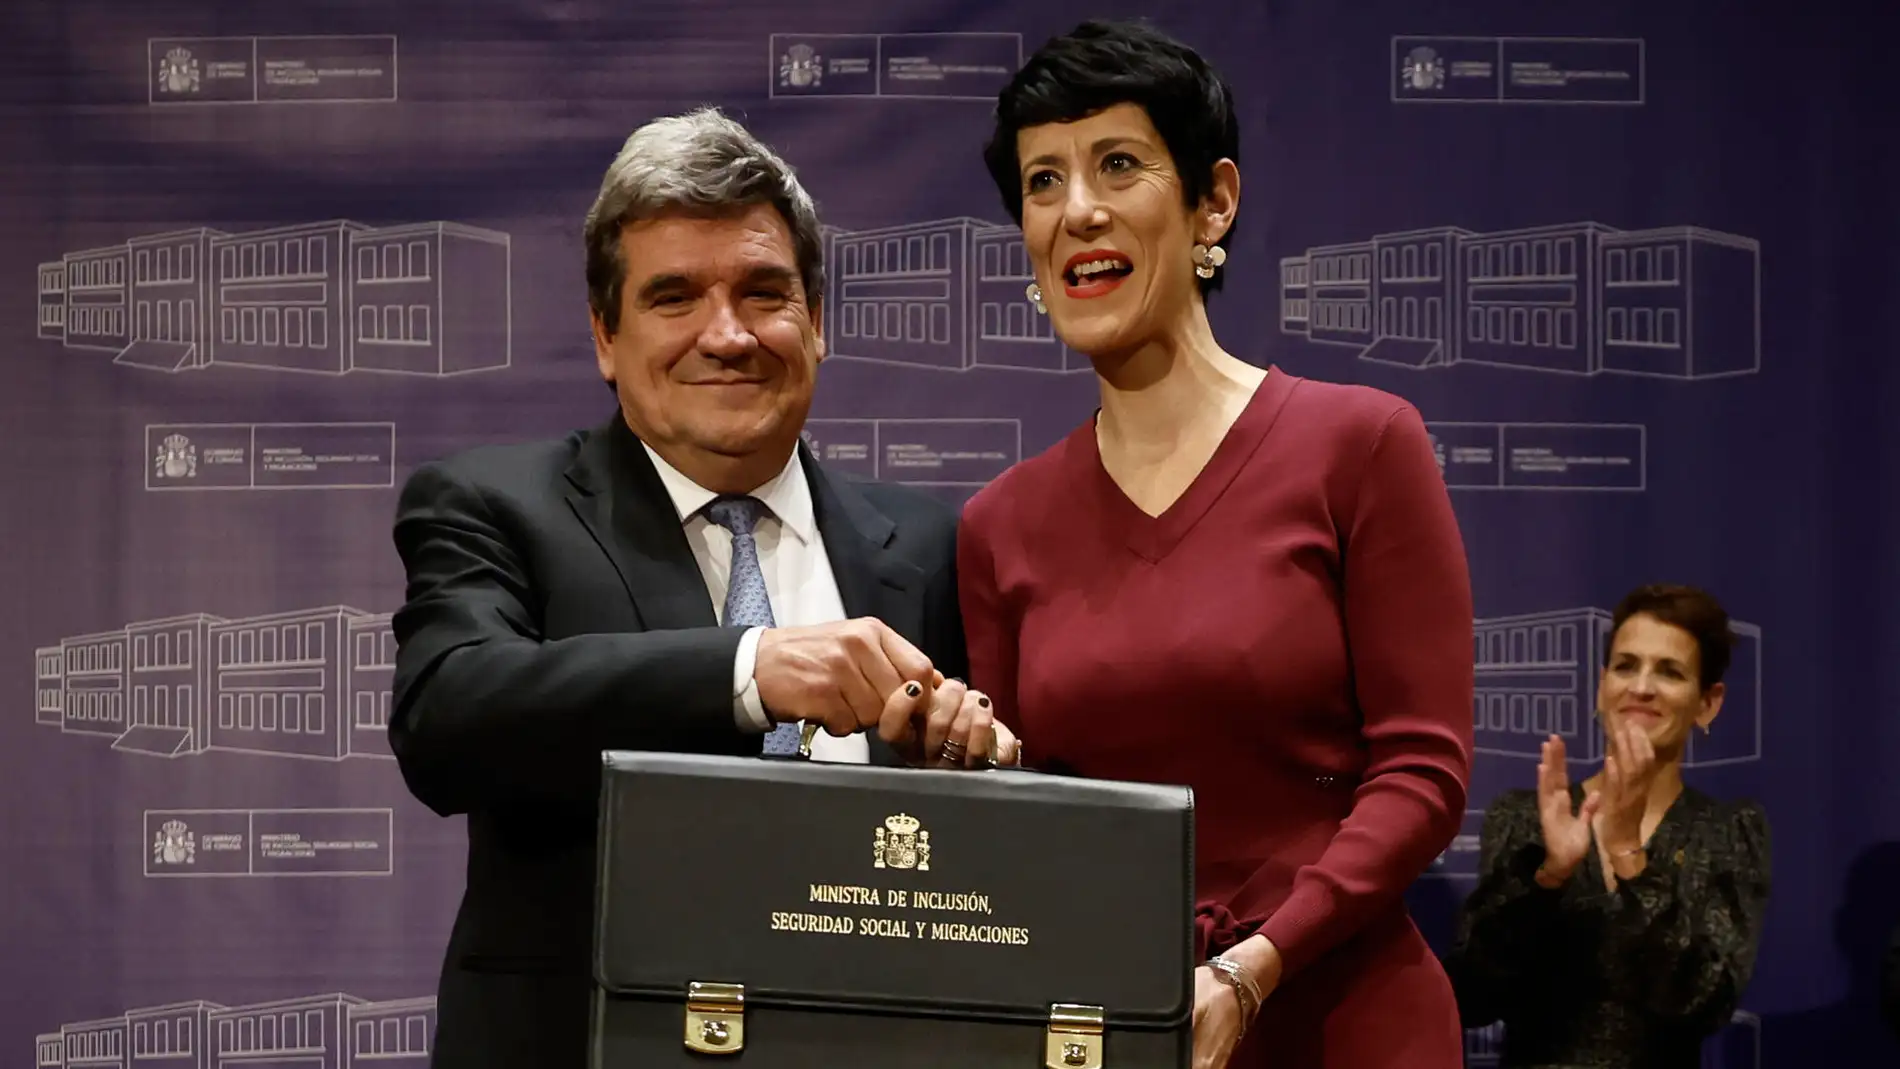 La nueva ministra de Inclusión, Seguridad Social y Migraciones, Elma Saiz, recibe la cartera de José Luis Escrivá